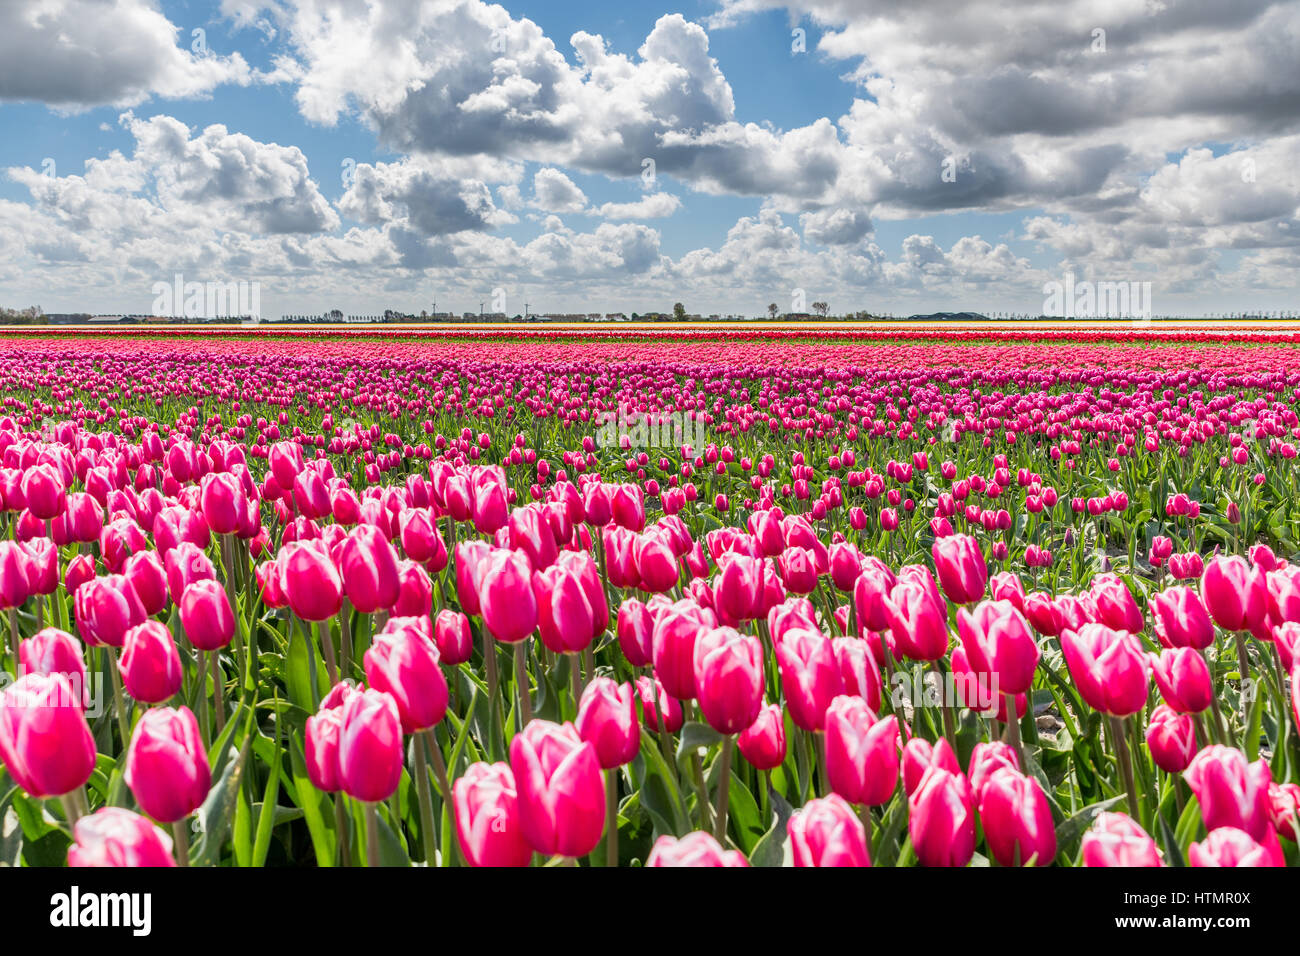 Champs de tulipes en Hollande lors d'une journée ensoleillée au printemps. Les champs sont en fleurs et le ciel au-dessus est bleu avec des nuages blancs. Banque D'Images